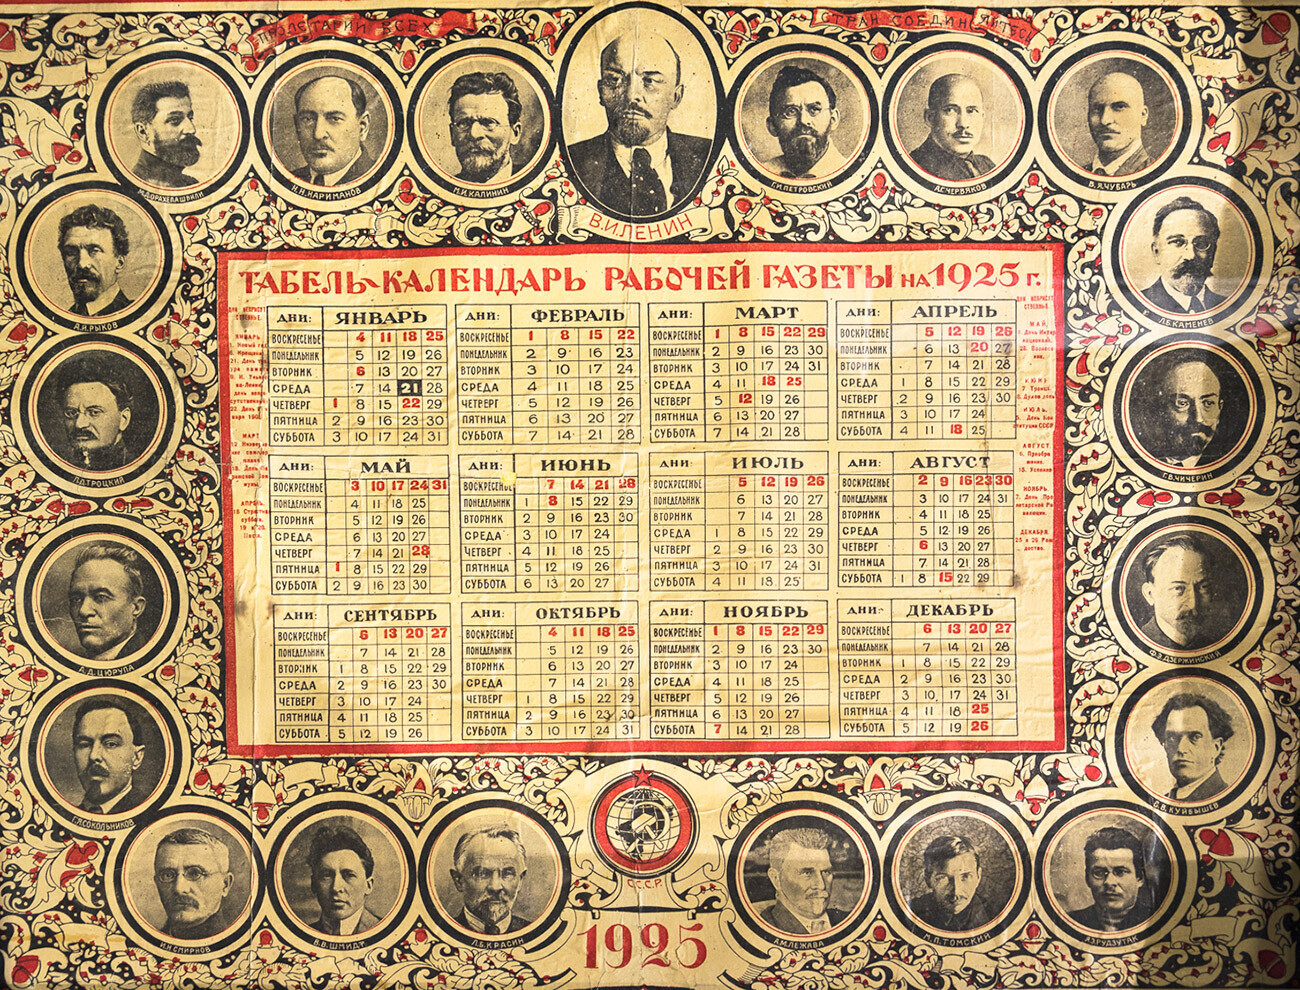 Sovjetski koledar za leto 1925. Vsi tedni se še vedno začenjajo na nedeljo.
